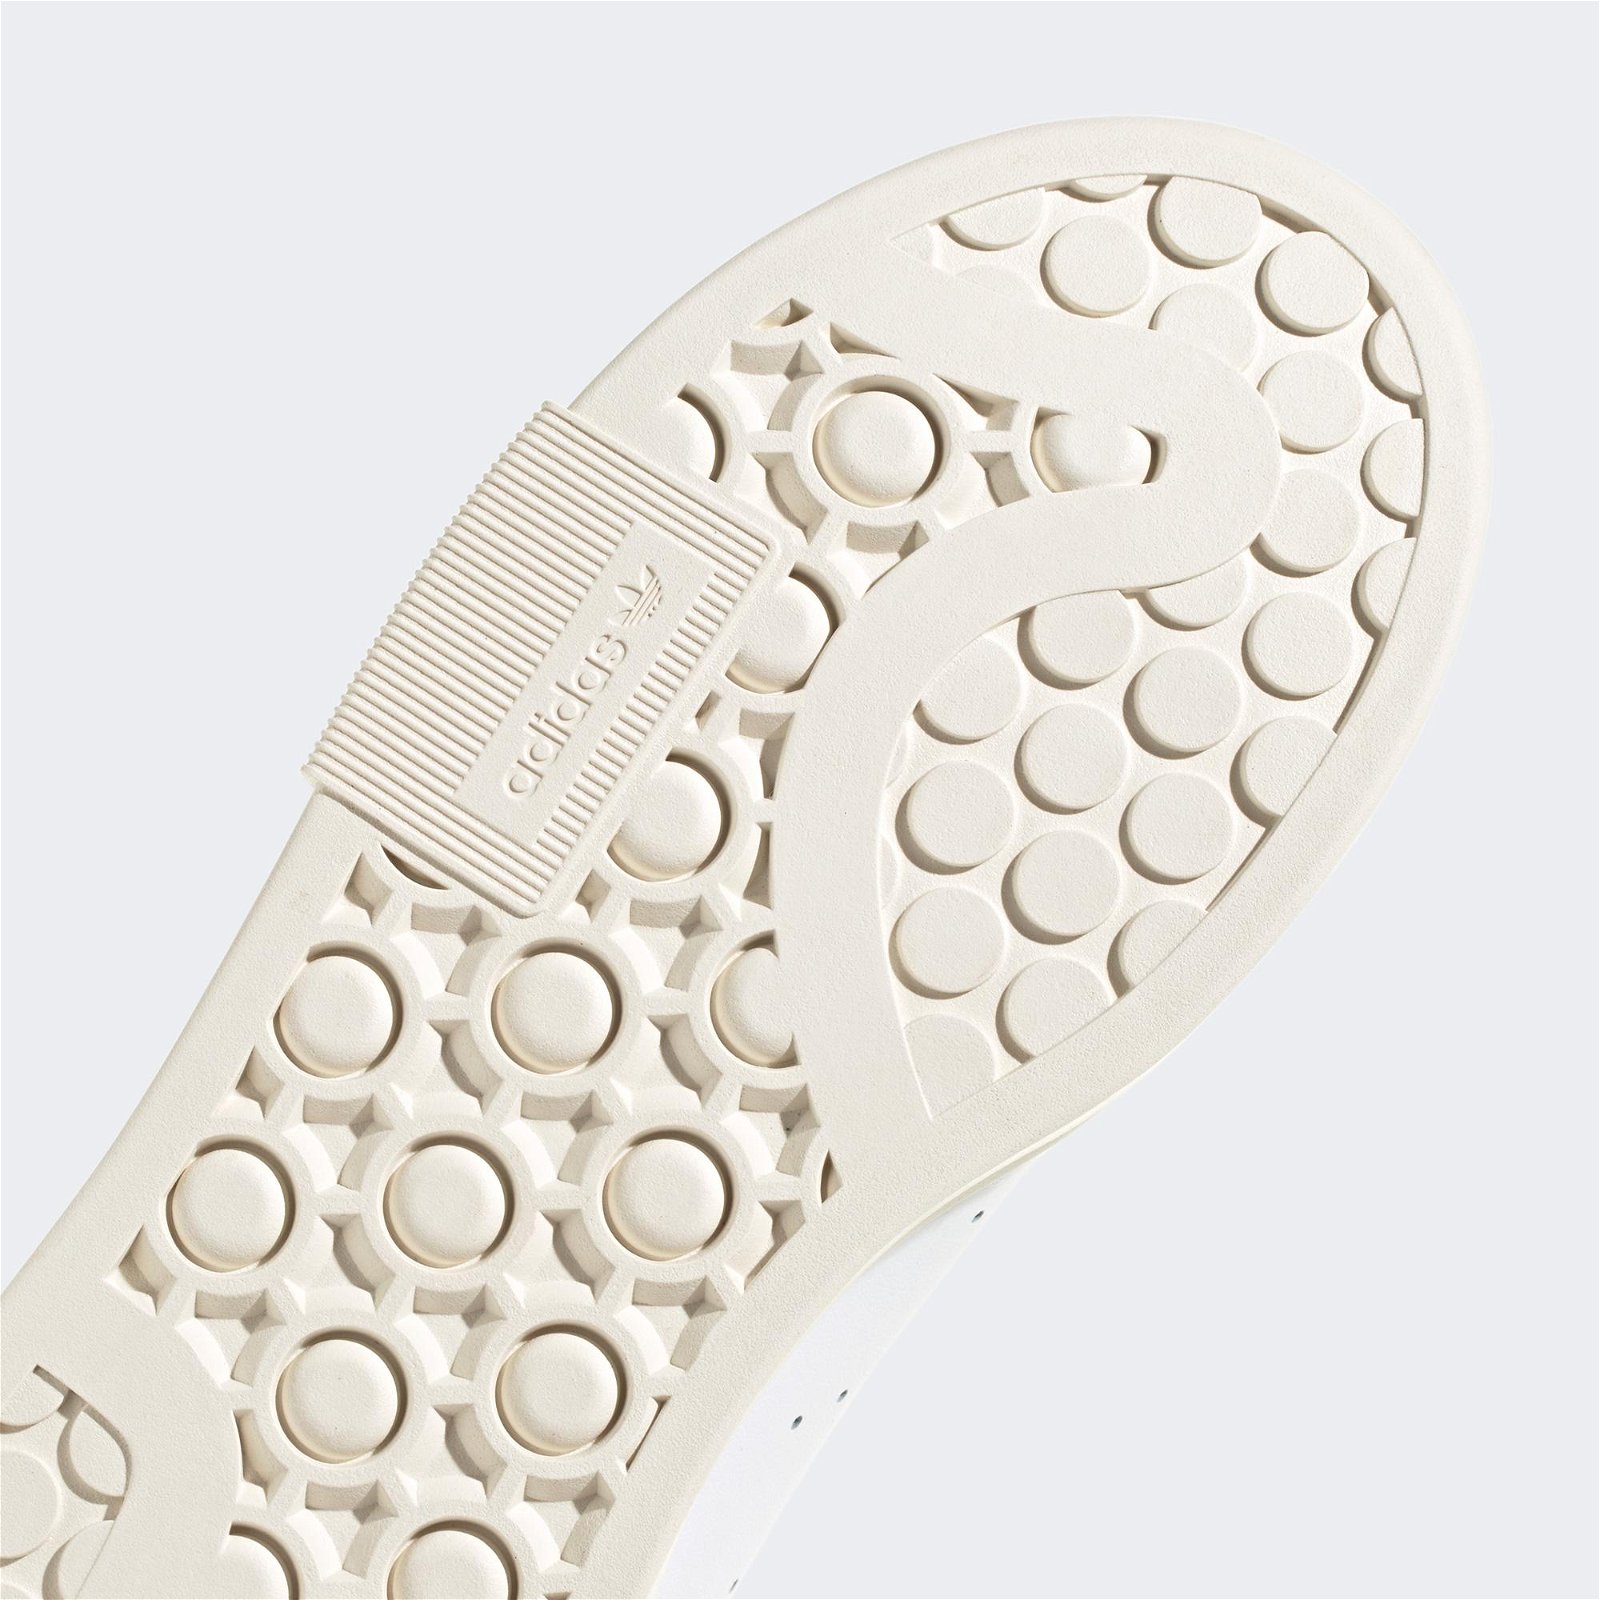 adidas Stan Smith Bonega 2B Kadın Beyaz Sneaker